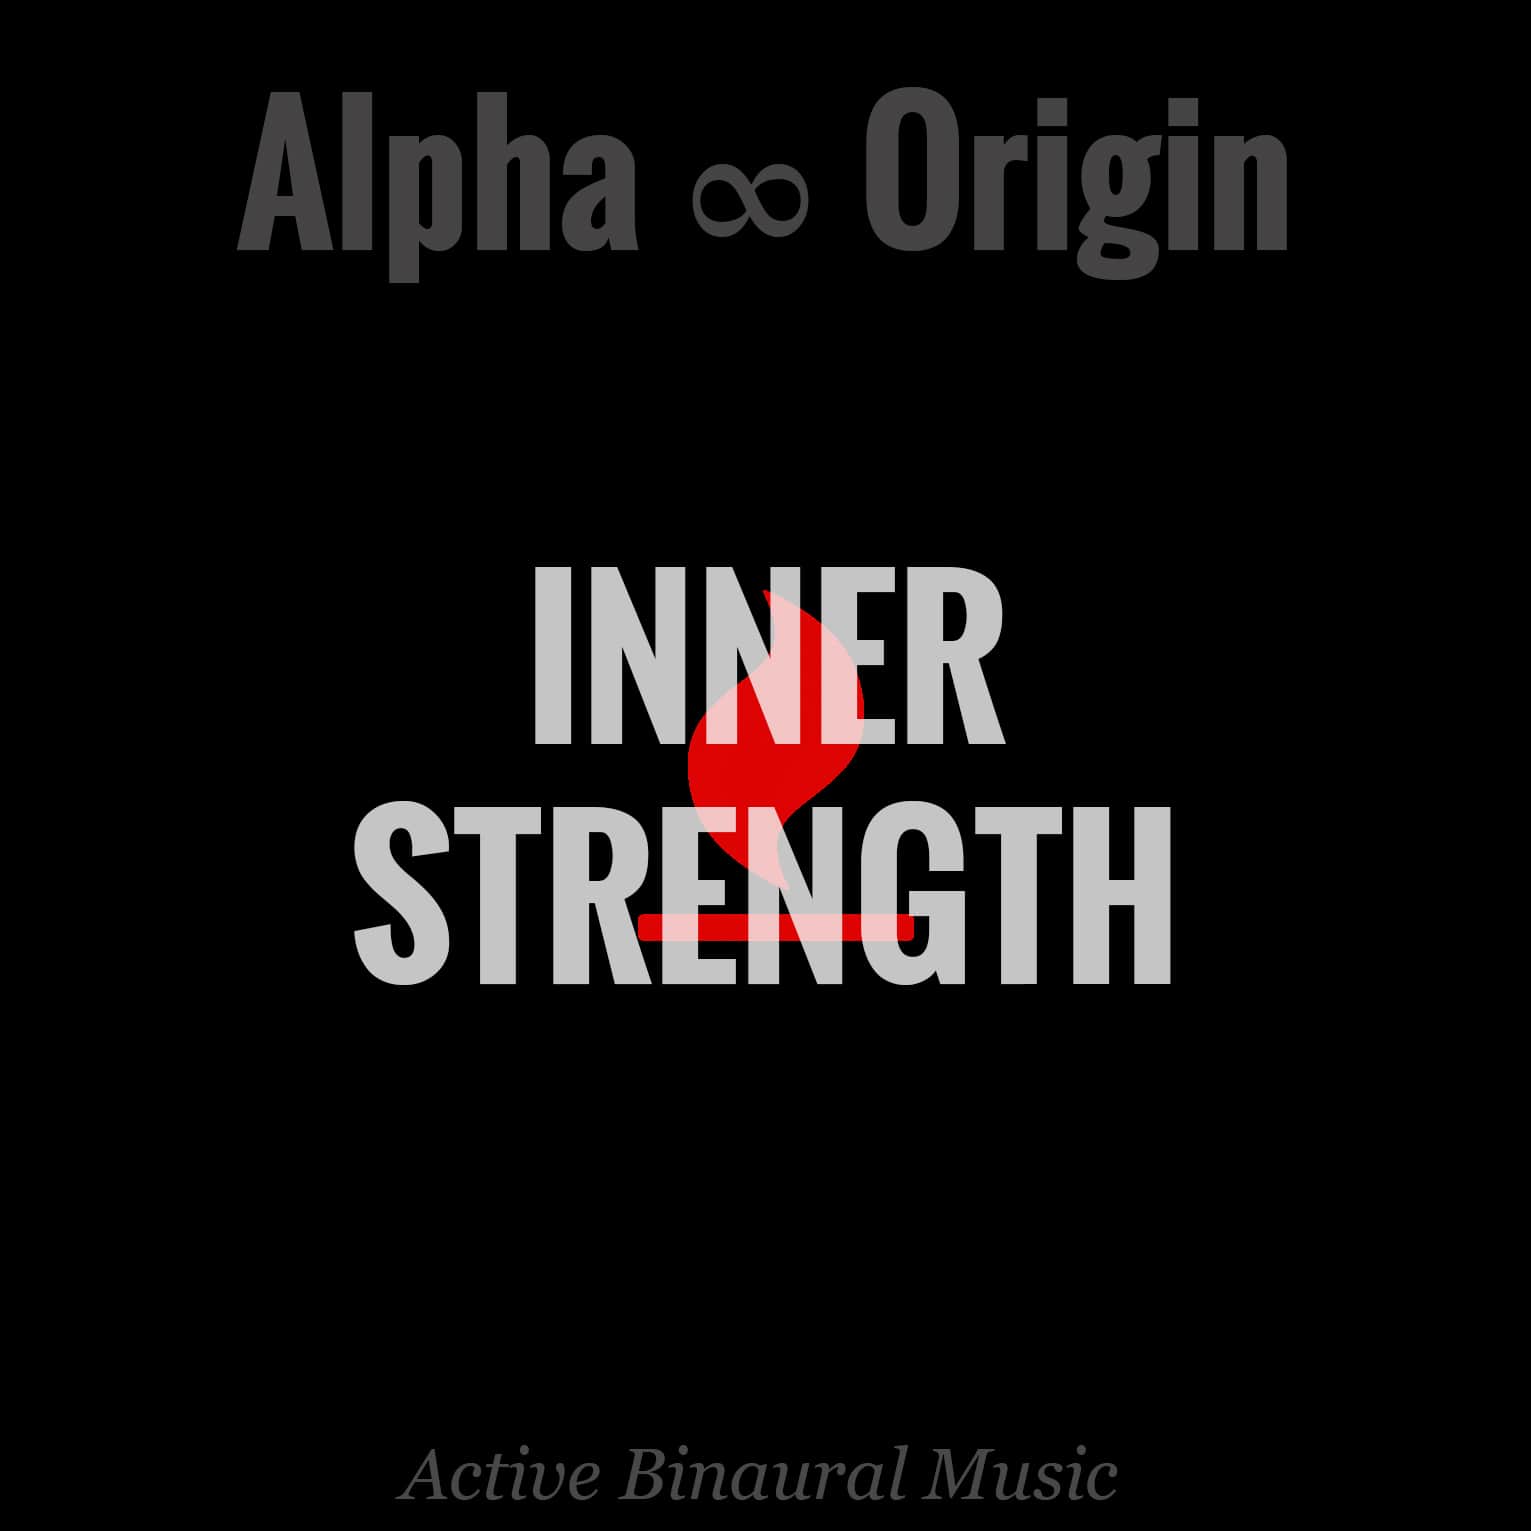 inner strength